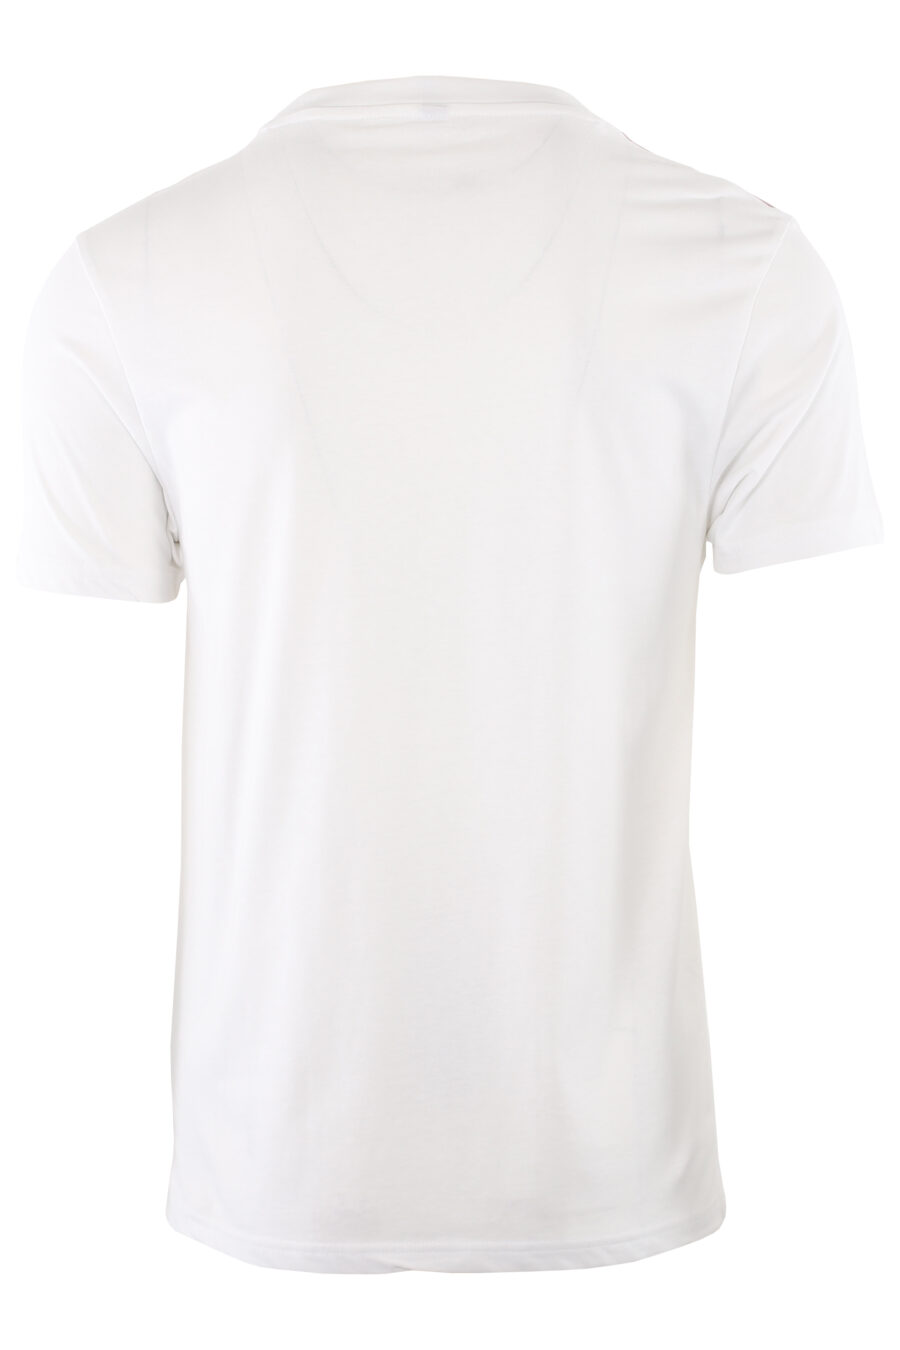 Camiseta blanca con logotipo en cinta hombros - IMG 7414